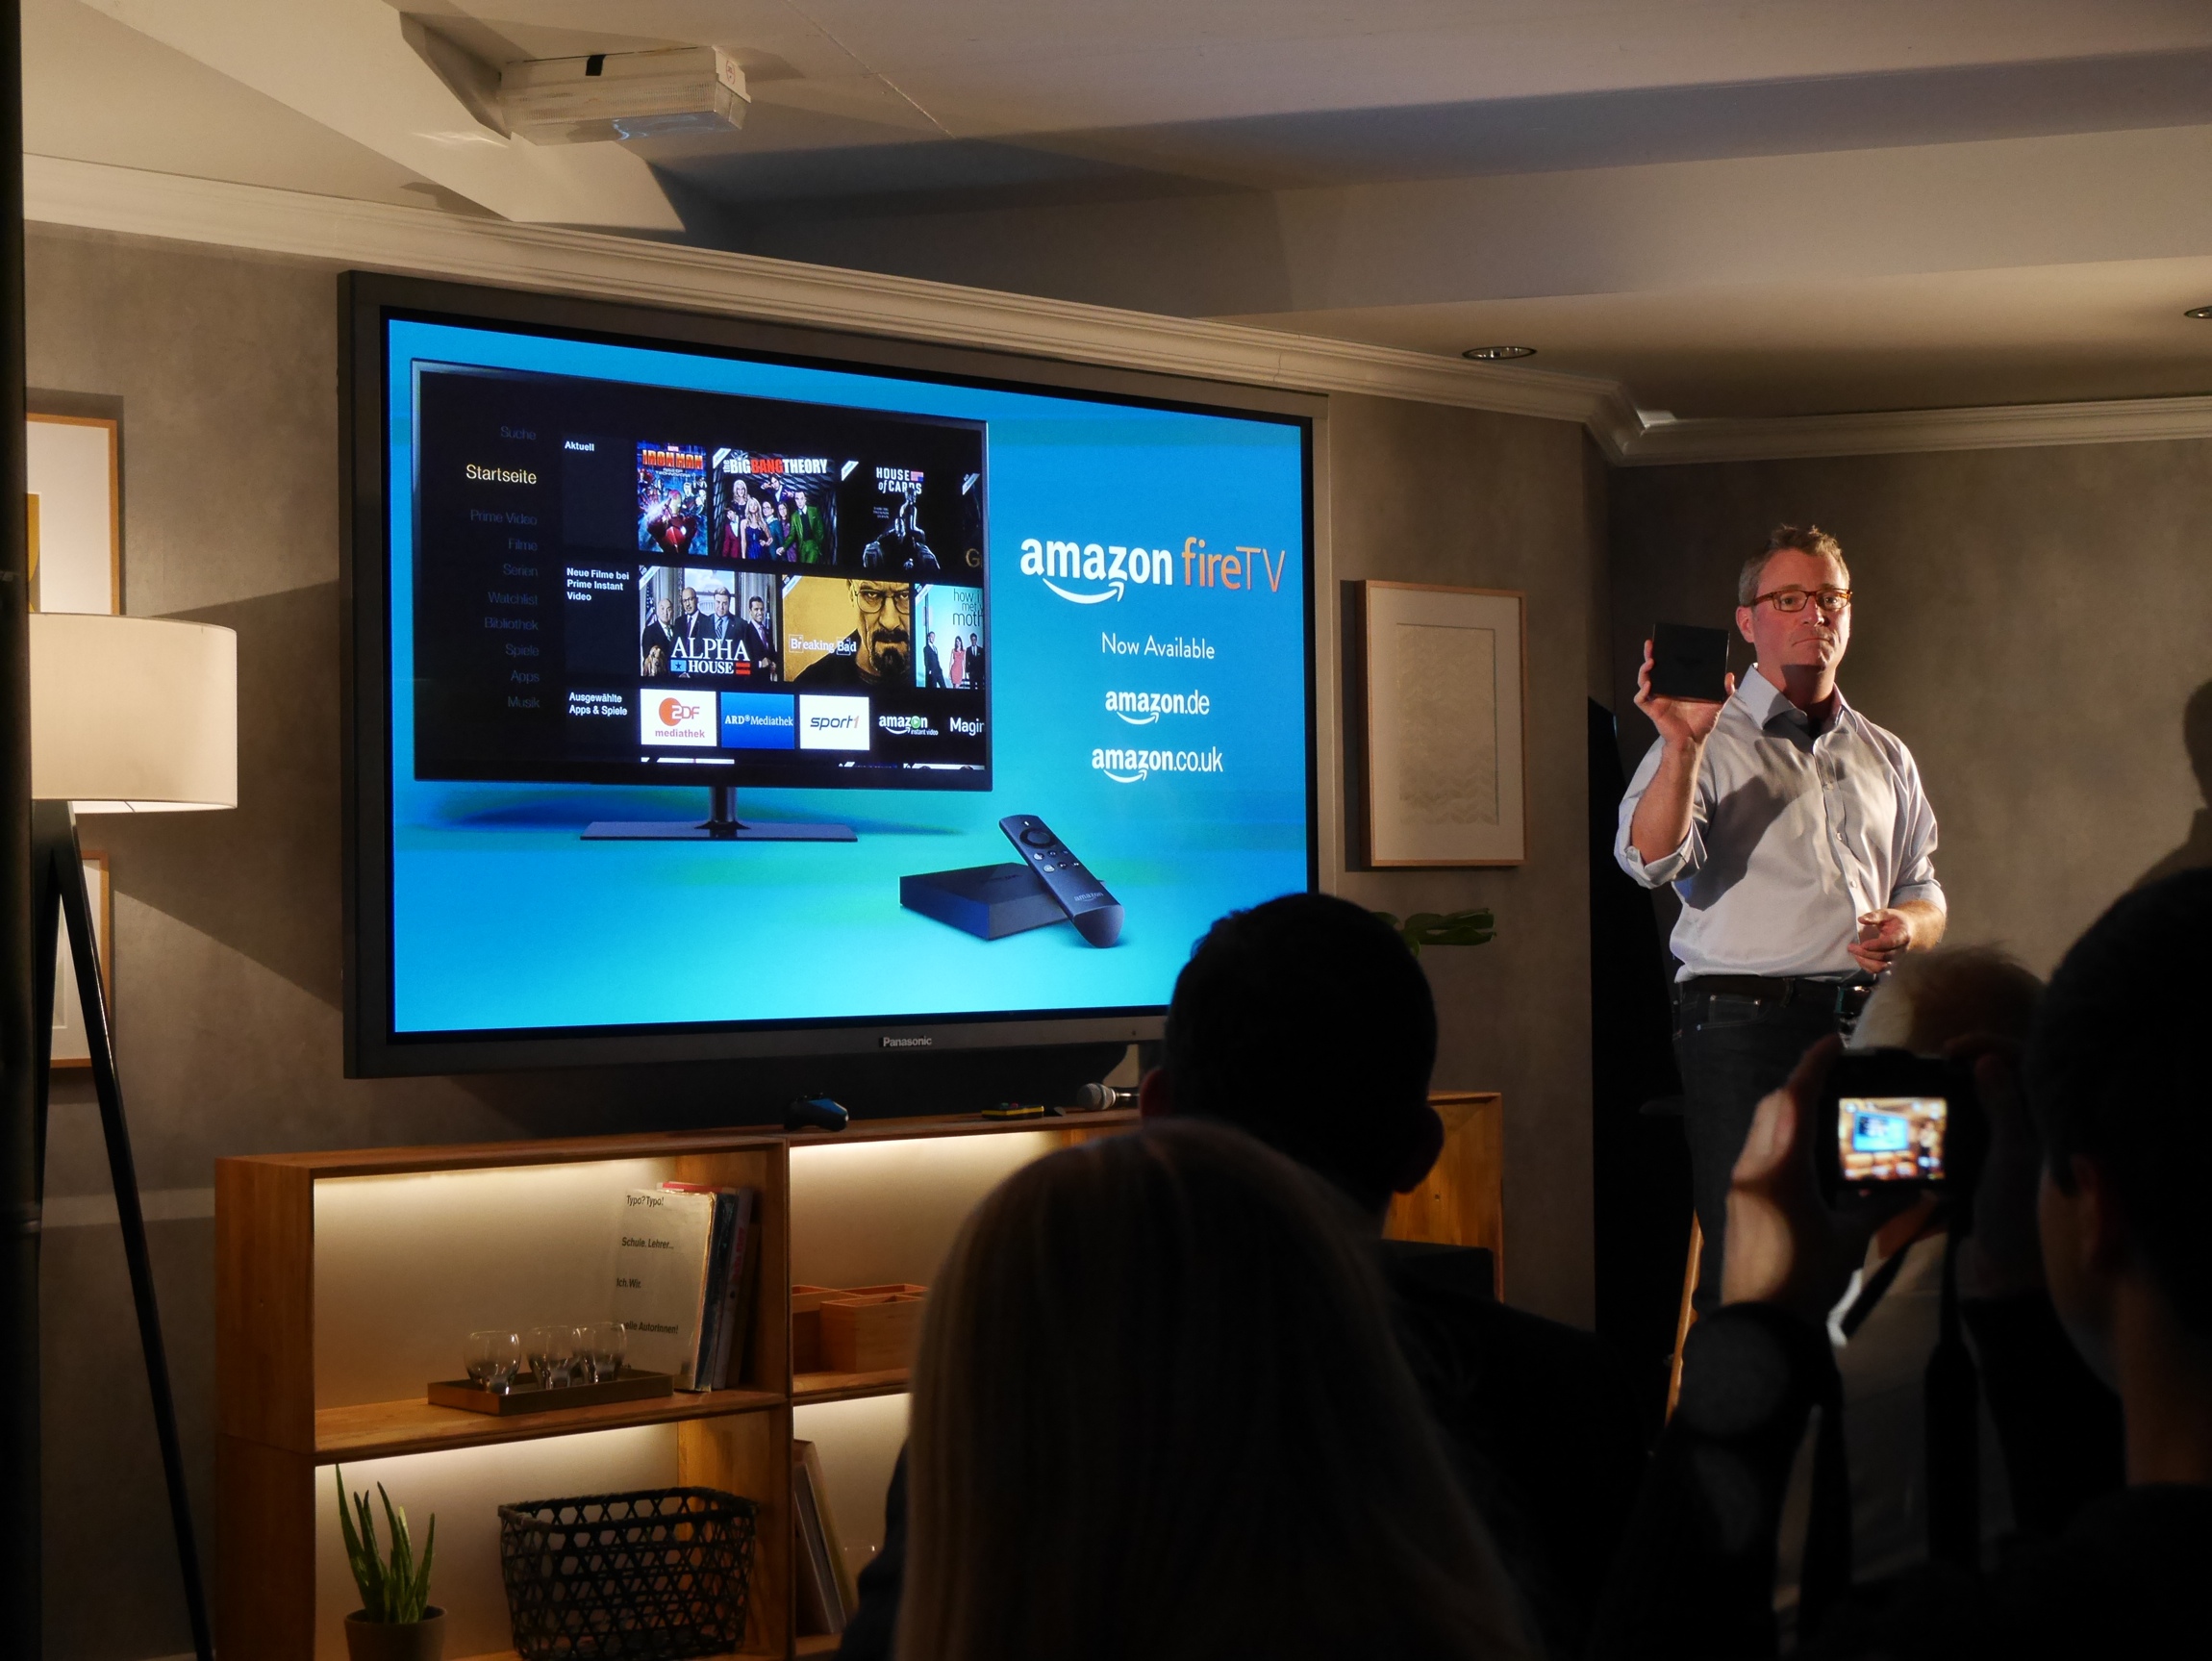 Amazon Fire TV secara resmi tiba di Inggris bulan depan; dapatkan streaming media, game yang bermain set-top box seharga £ 79